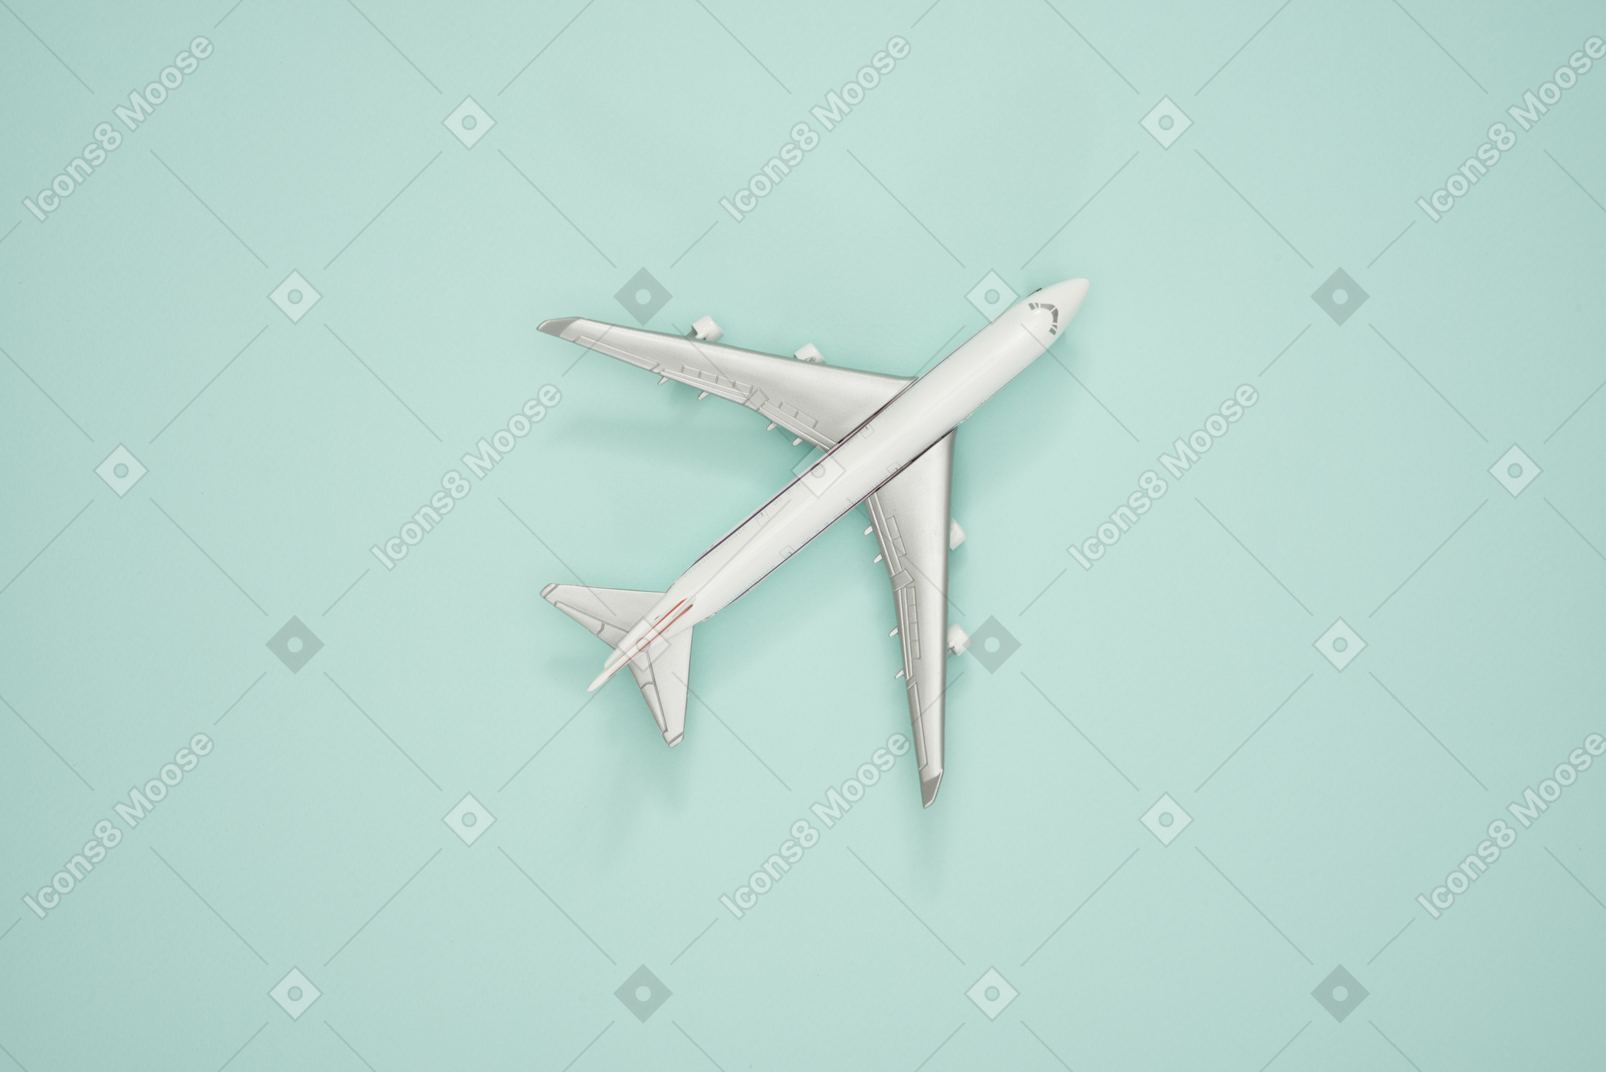 Modello di scala dell'aeroplano su uno sfondo turchese